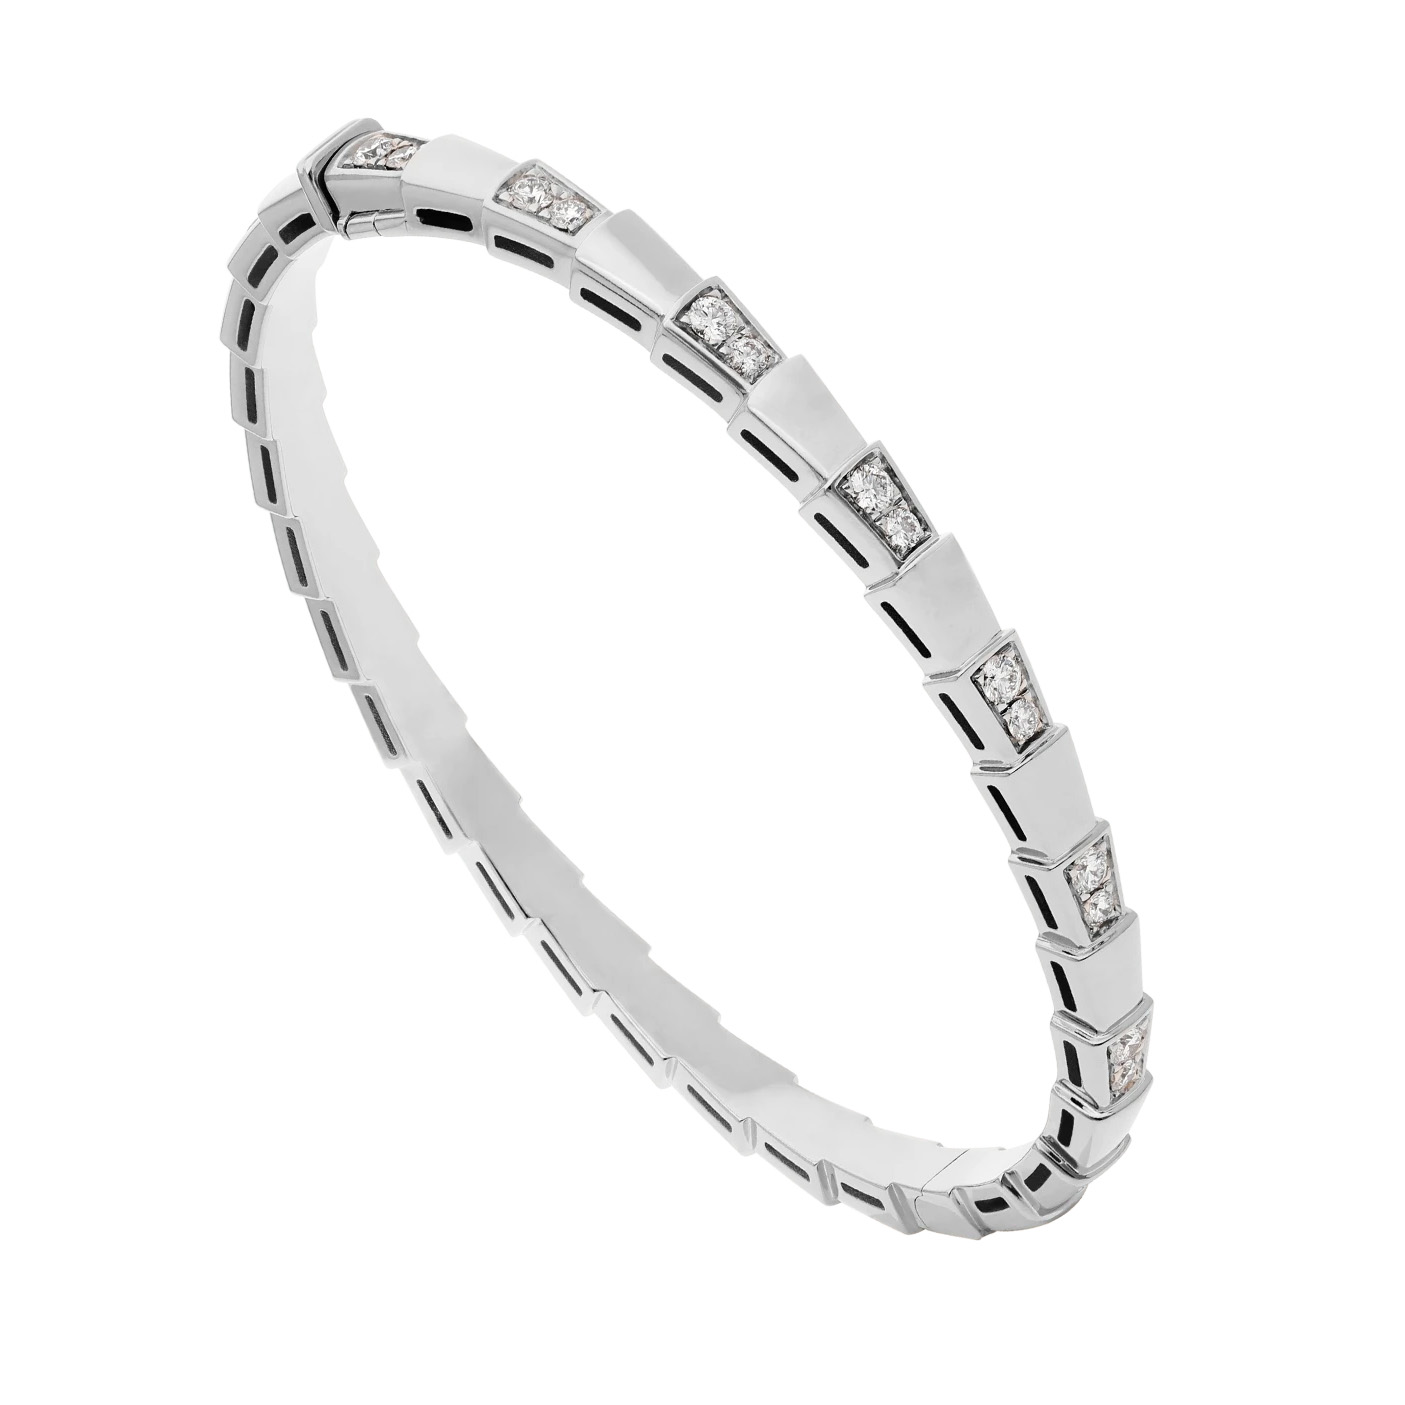 Venta al por mayor OEM hecho diseño 18K blanco OEM/ODM joyería pulsera de oro engastada con diamantes demi-pavé fabricantes de joyería personalizada china